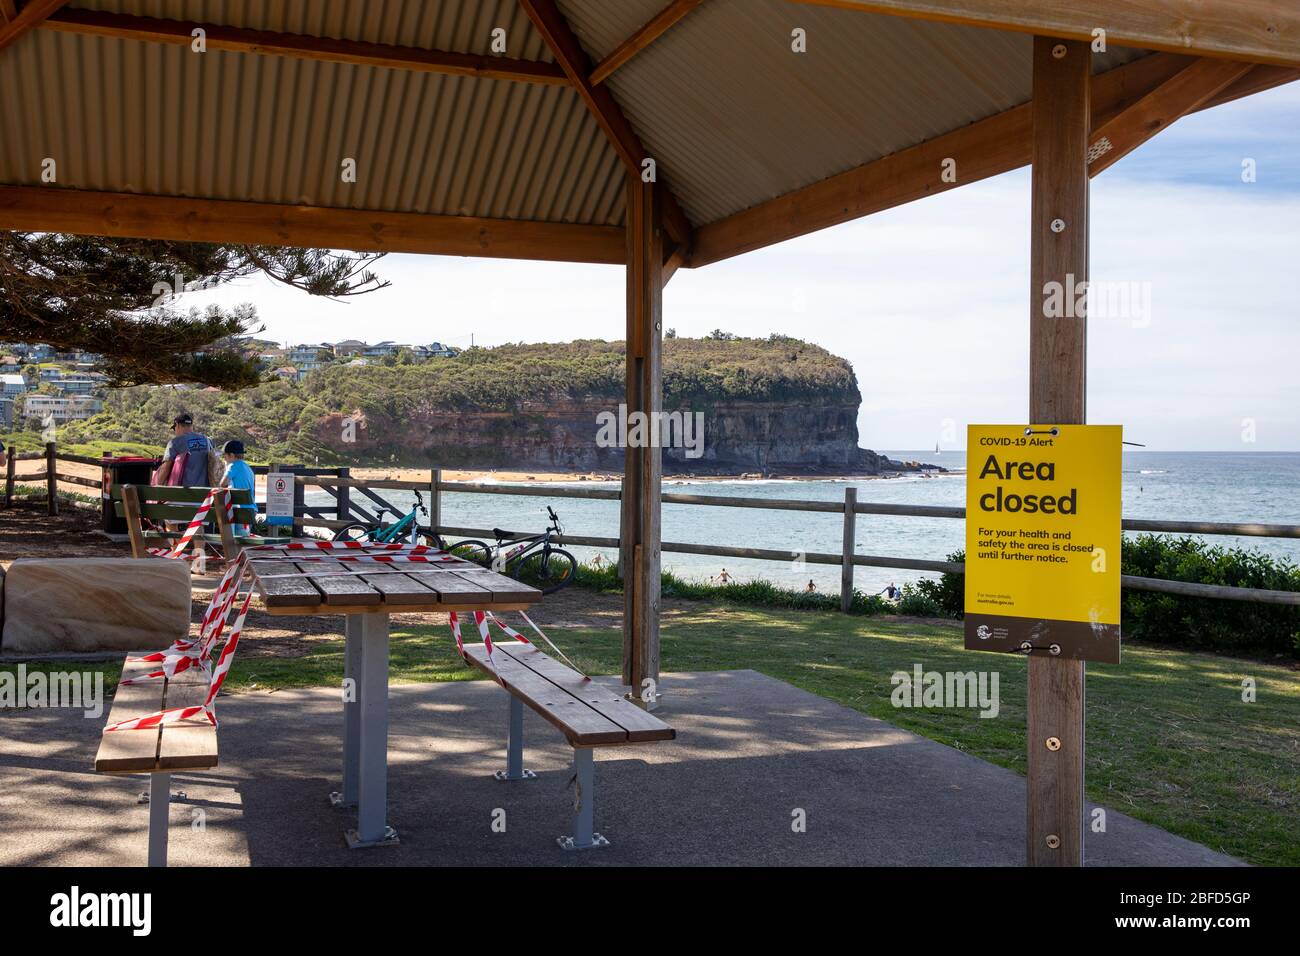 La pandemia de COVID 19 conduce al cierre de áreas públicas y a lugares para picnic y barbacoas en las playas de Sydney, aquí la playa de Mona vale, Sydney, Australia Foto de stock